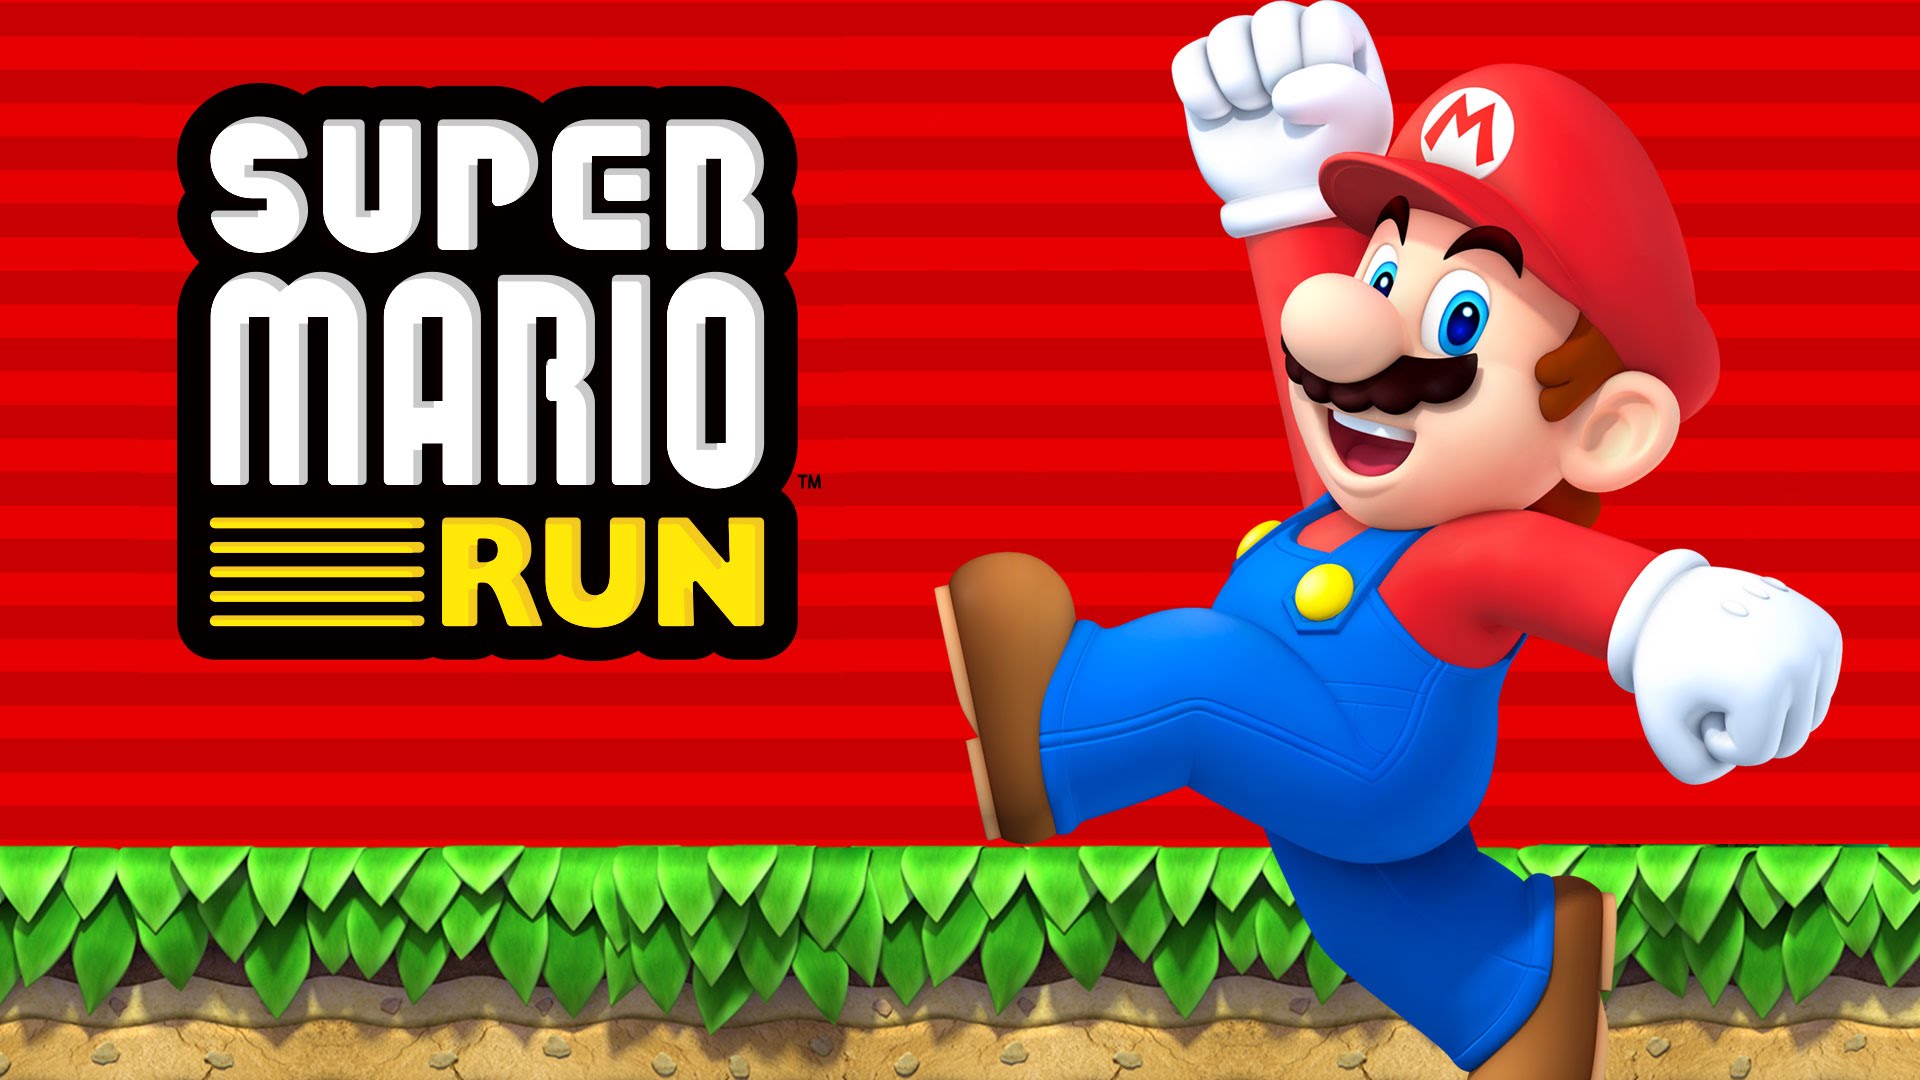 Super Mario Run foi lançado no iPhone e iPad, mas dever chegar aos aparelhos Android em breve.